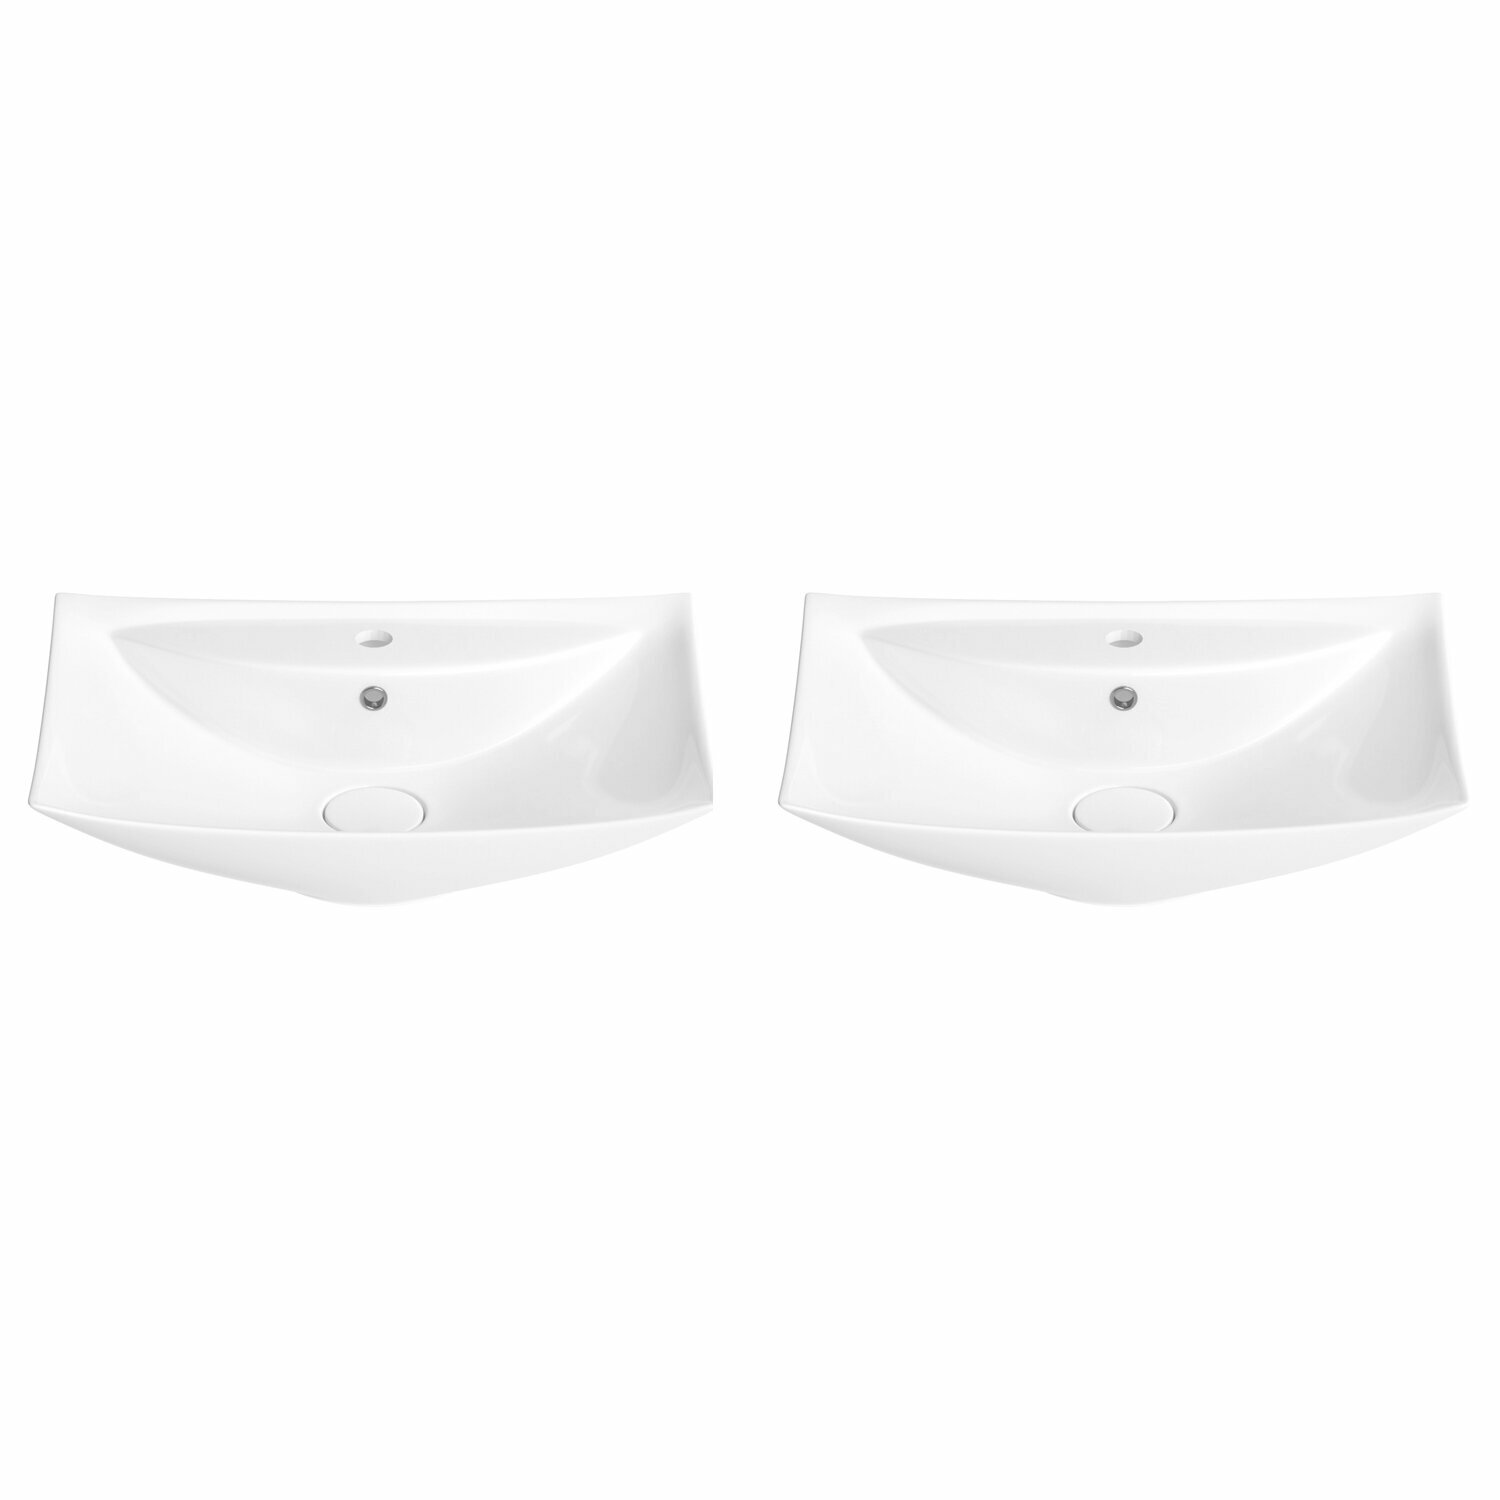 Накладная раковина для ванной Wellsee Cerulean 151001001 в наборе 2 в 1: раковины 2 шт, ширина одного умывальника 60 см, цвет глянцевый белый